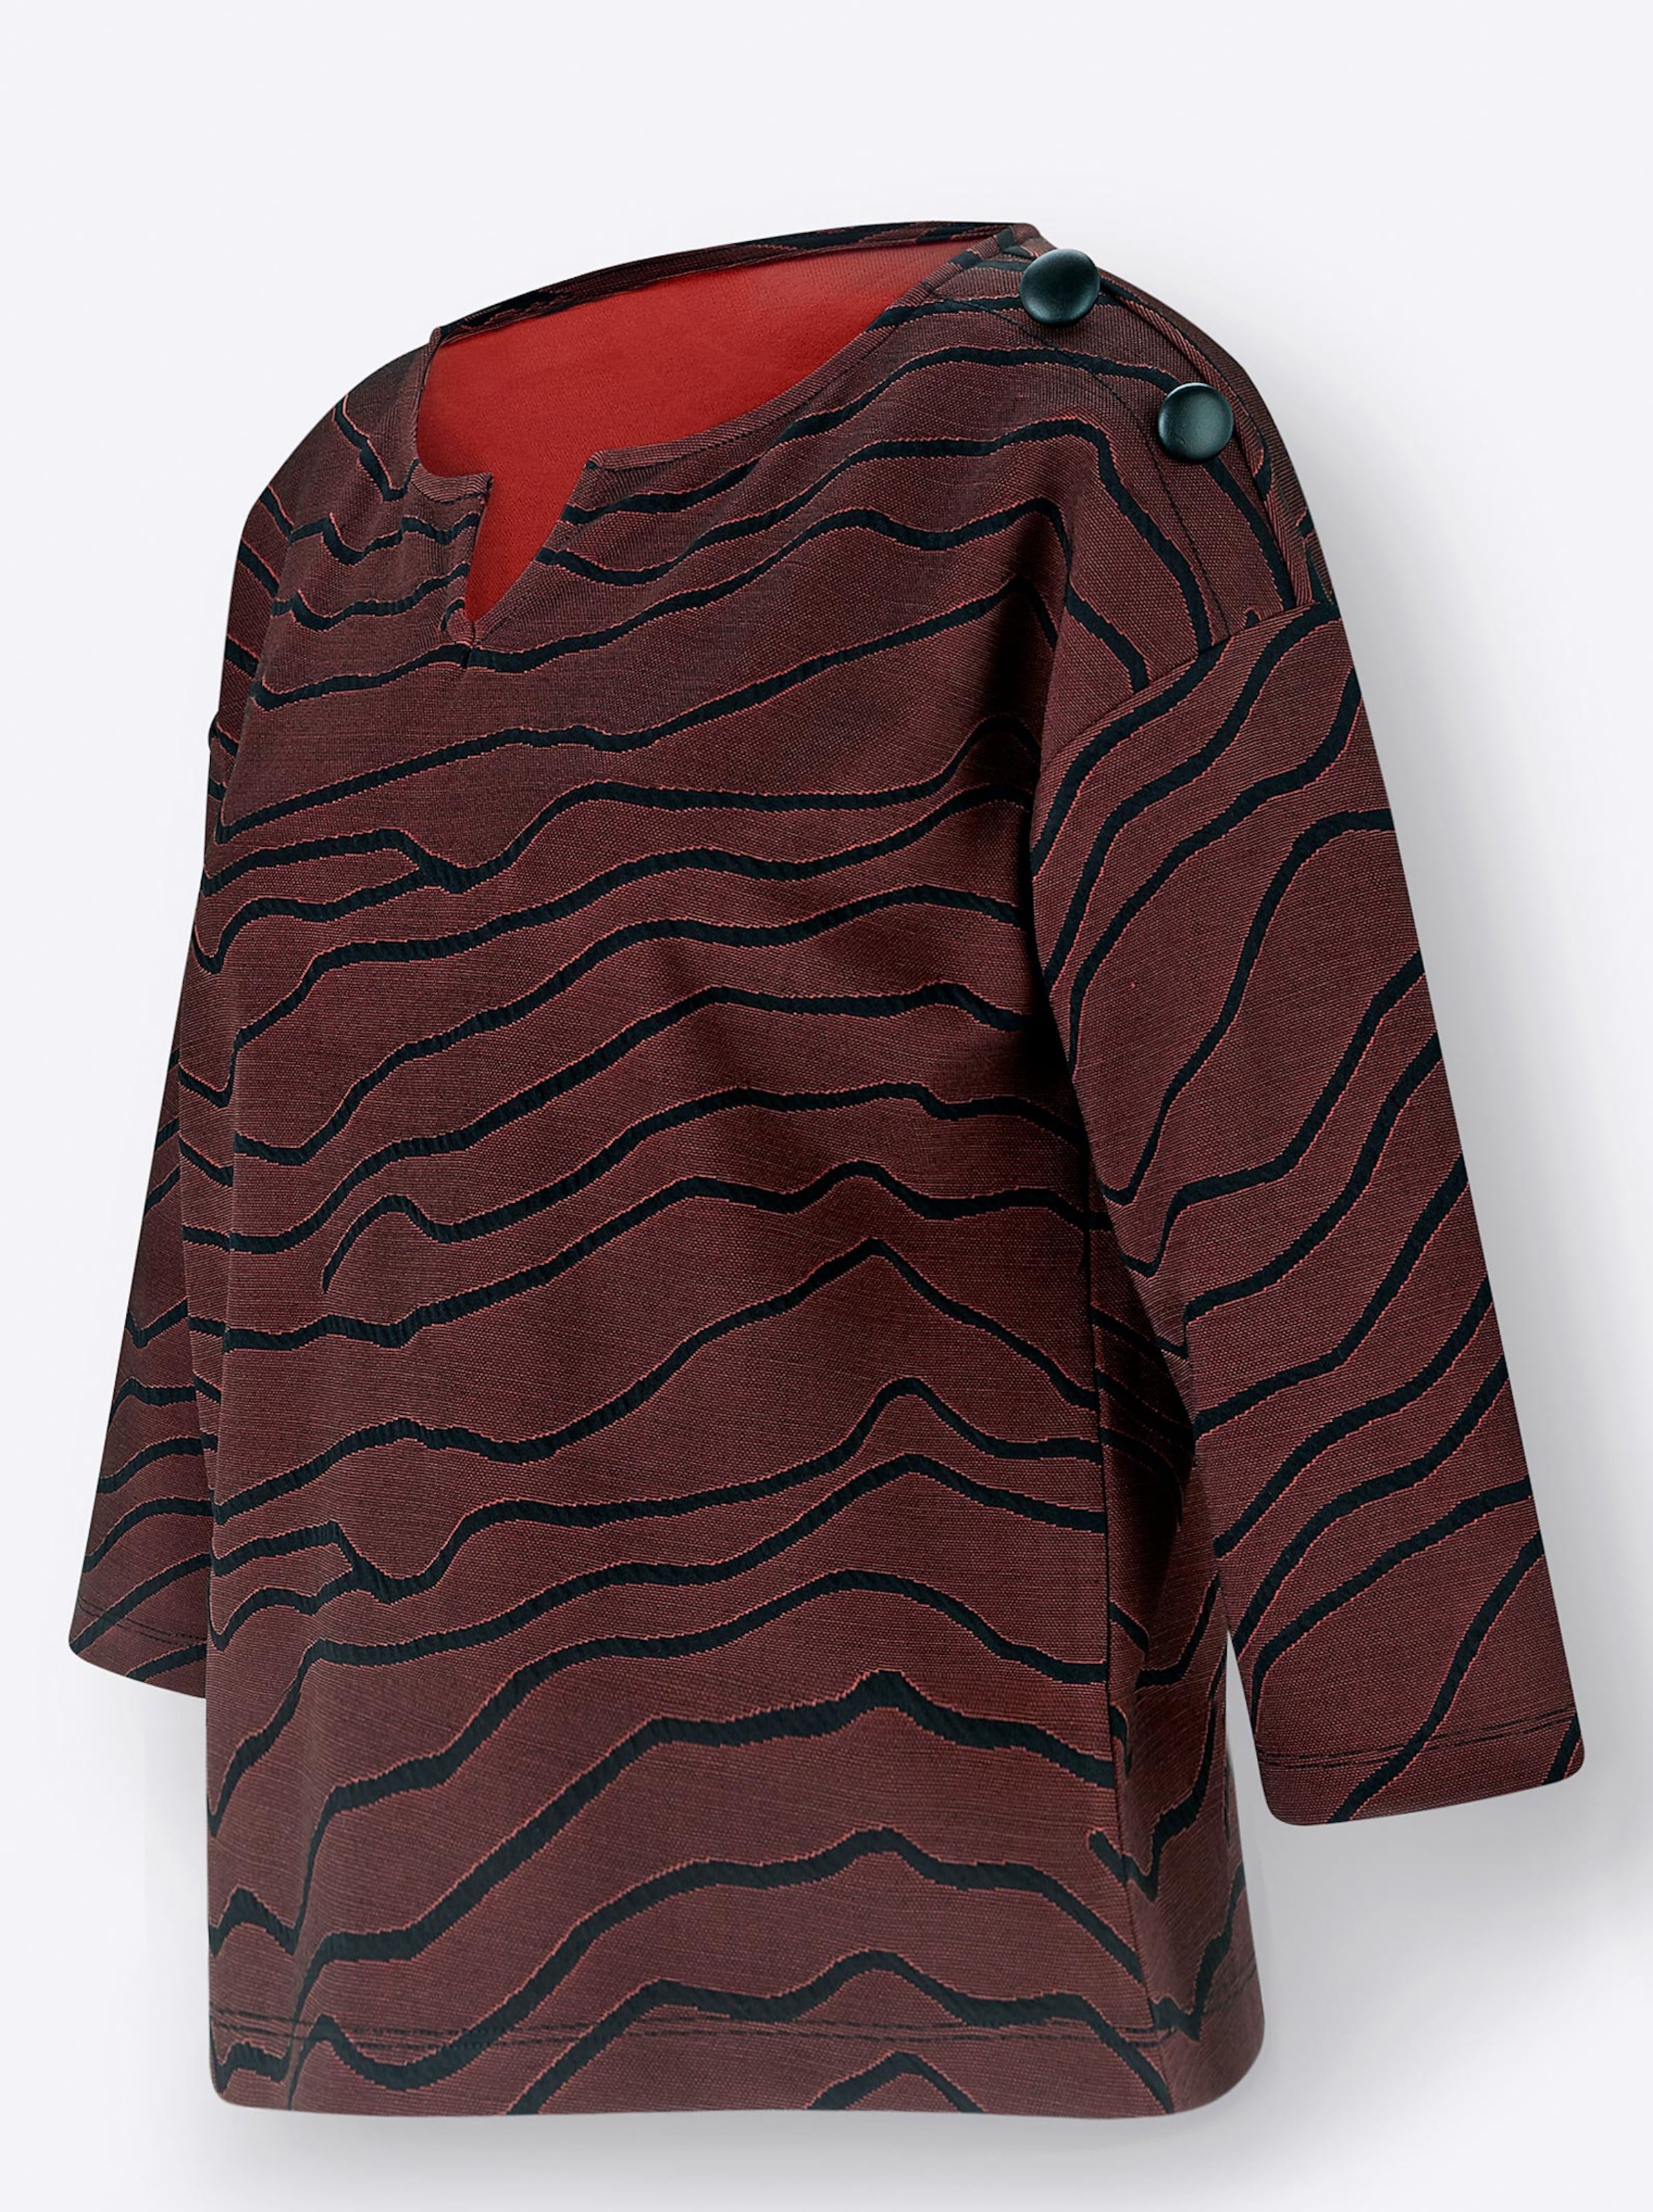 Damenmode Shirts 3/4-Arm-Shirt in rotbraun-schwarz-bedruckt 